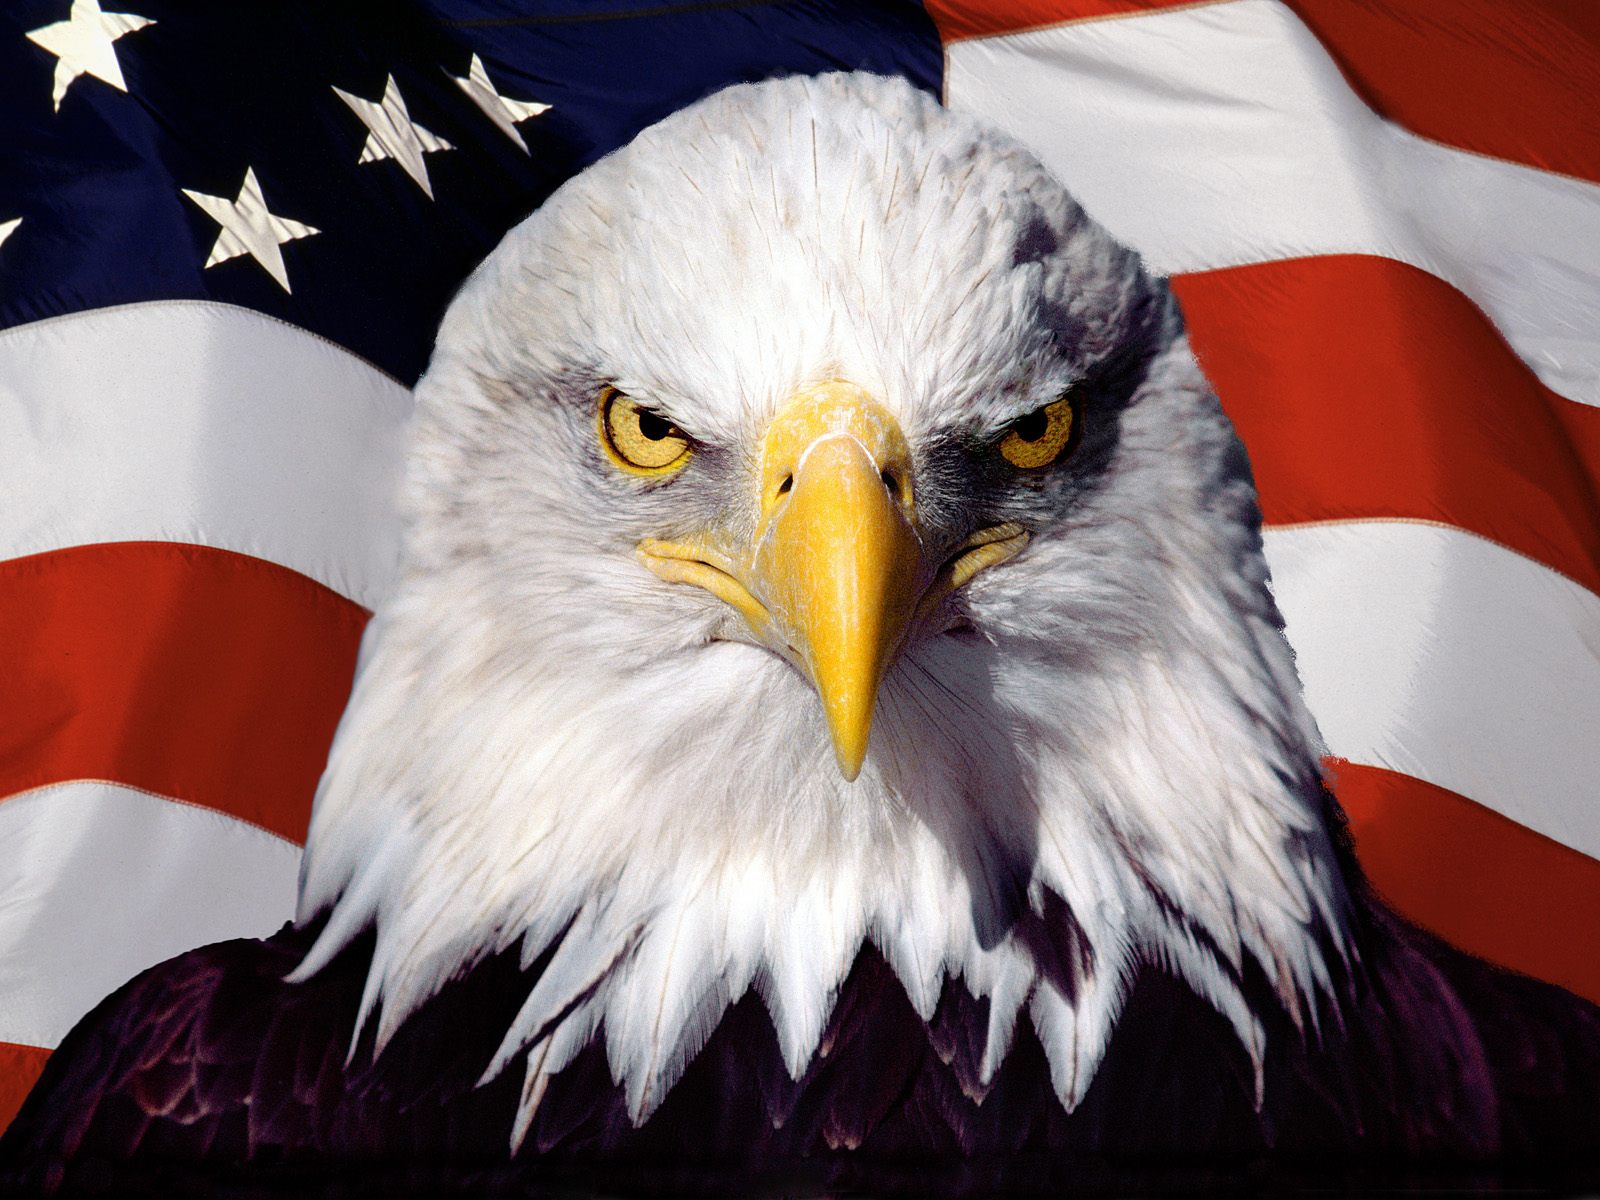 Biểu tượng quốc gia Hoa Kỳ: Biểu tượng quốc gia của Hoa Kỳ - quốc kỳ cờ sao sọc được xem là biểu tượng của sự tự do, độc lập và chủ nghĩa dân tộc. Đây là biểu tượng của con người Mỹ và sự hy vọng vào tương lai. Hãy khám phá hình ảnh liên quan để hiểu thêm về ý nghĩa và tình cảm của người Mỹ dành cho quốc kỳ của họ.